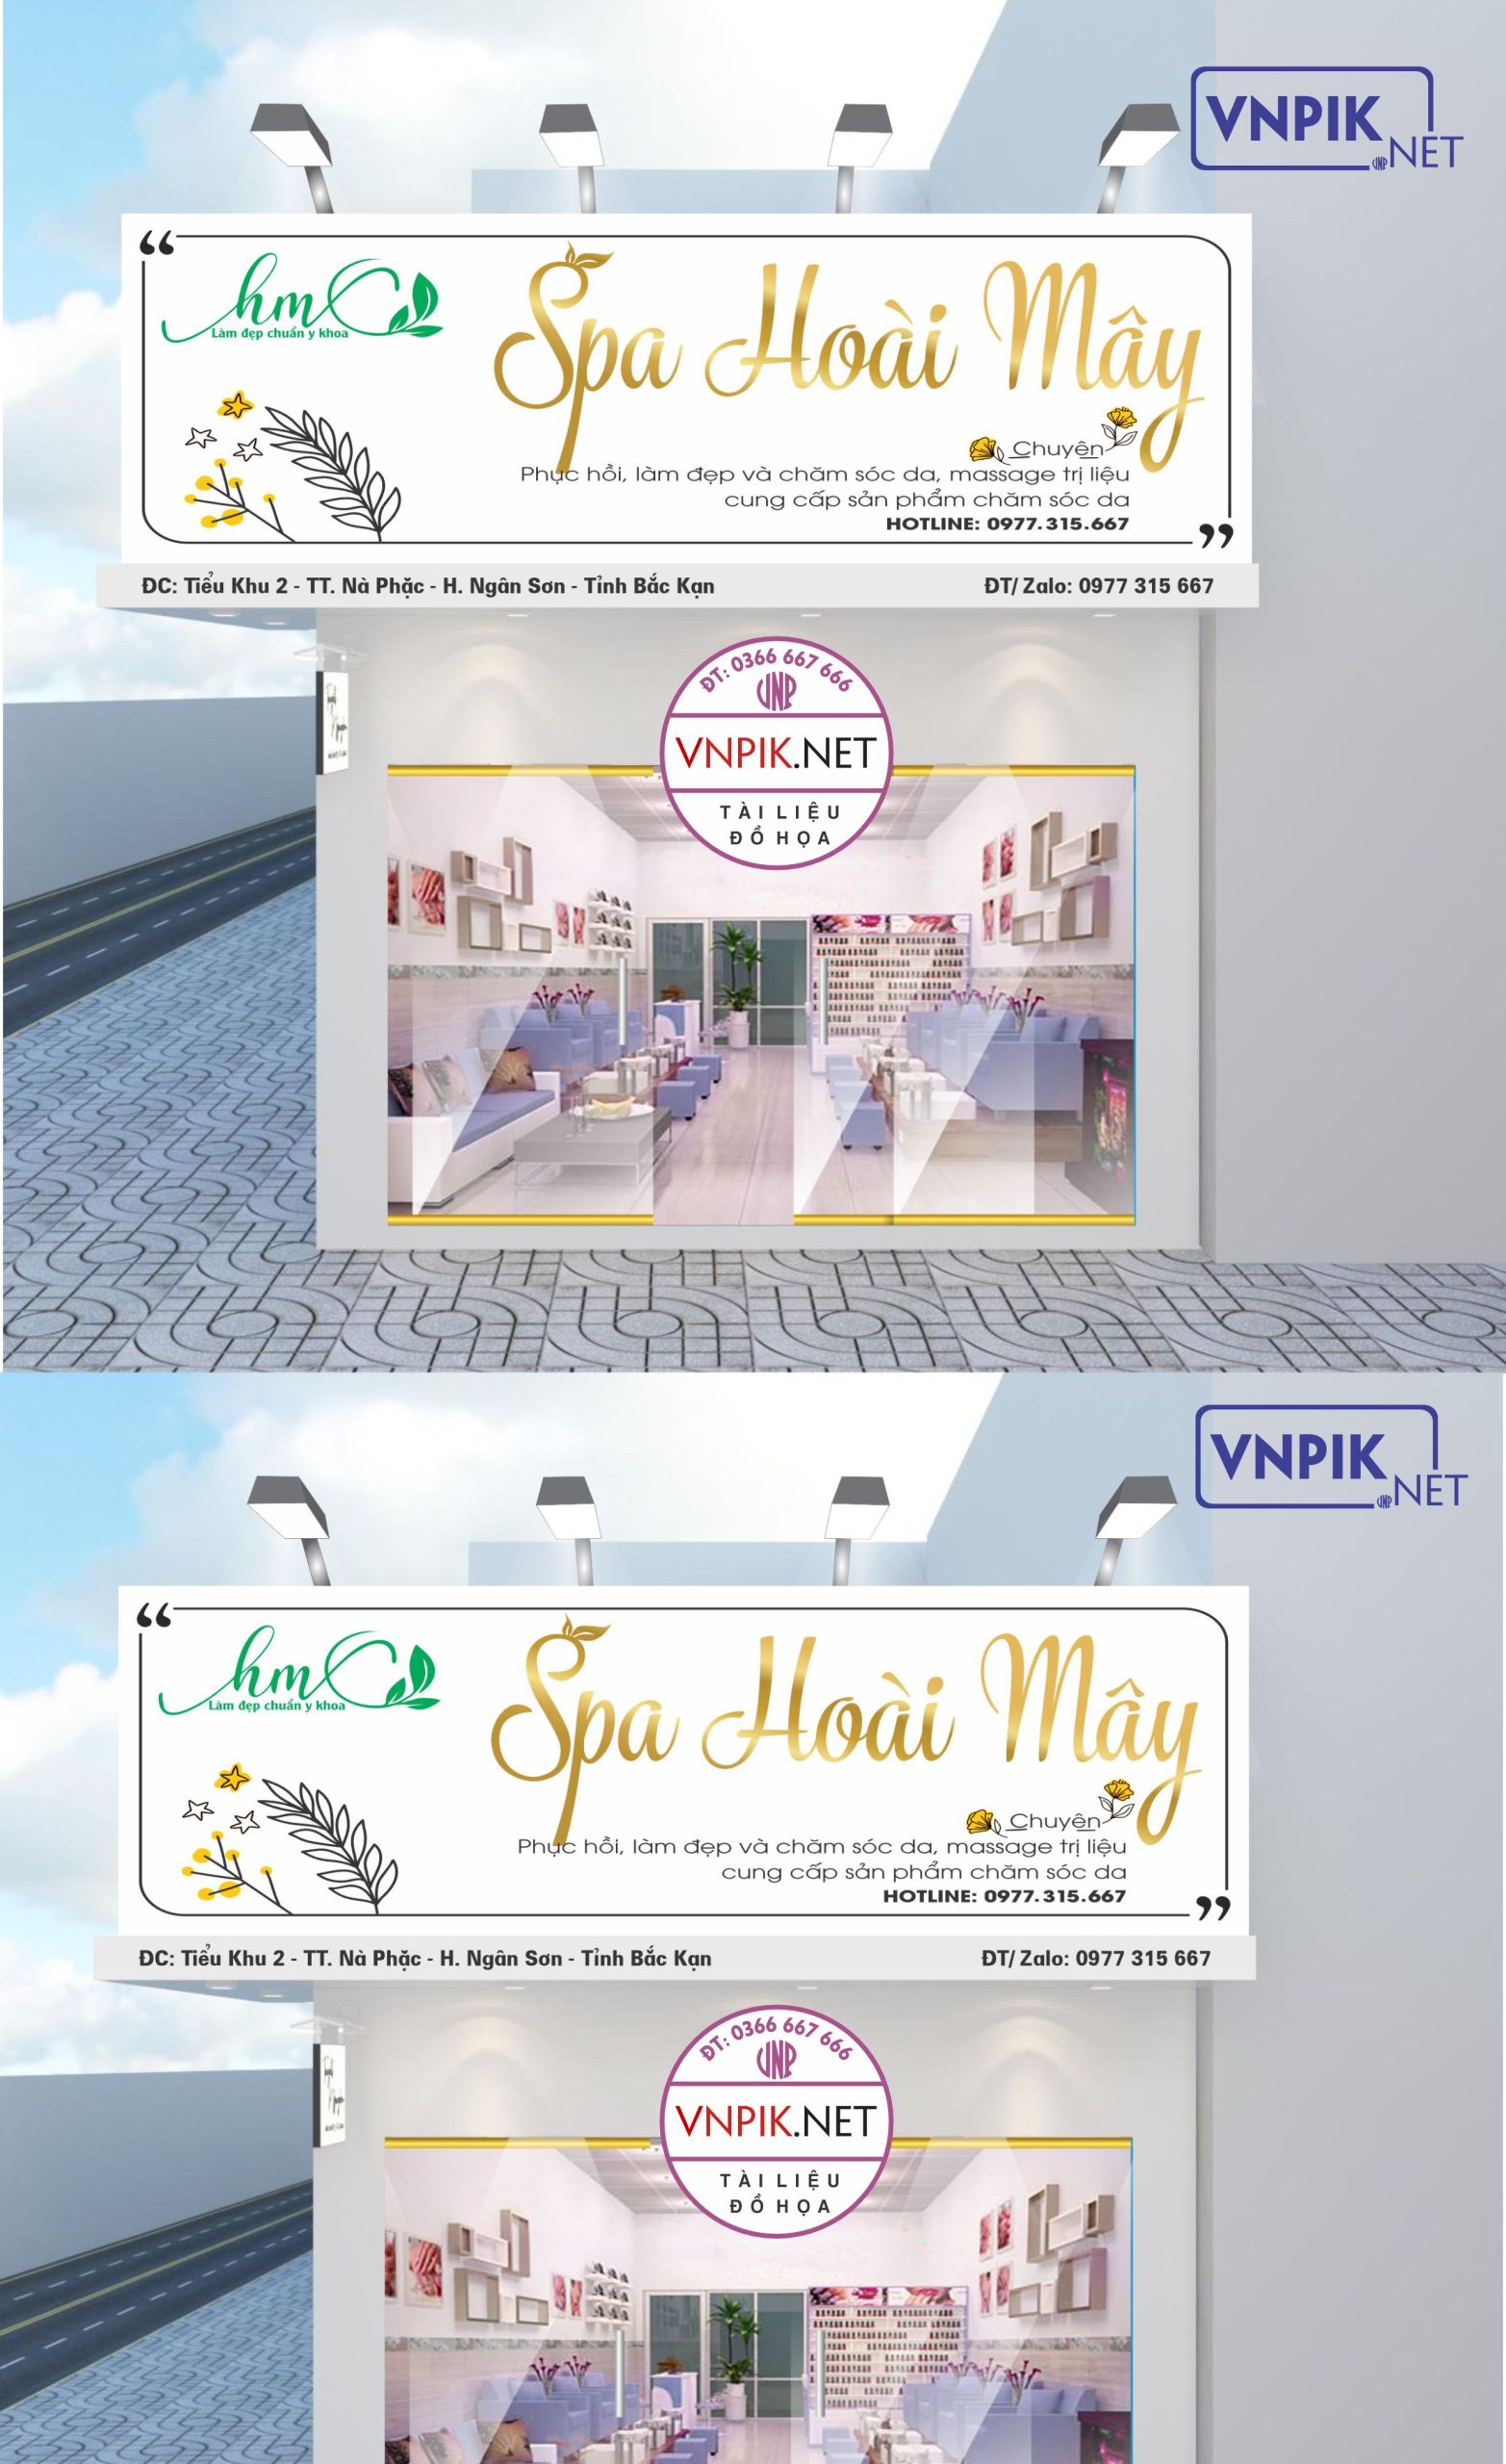 Mẫu biển quảng cáo Spa Hoài Mây, chăm sóc da, massage trị liệu mẫu 02